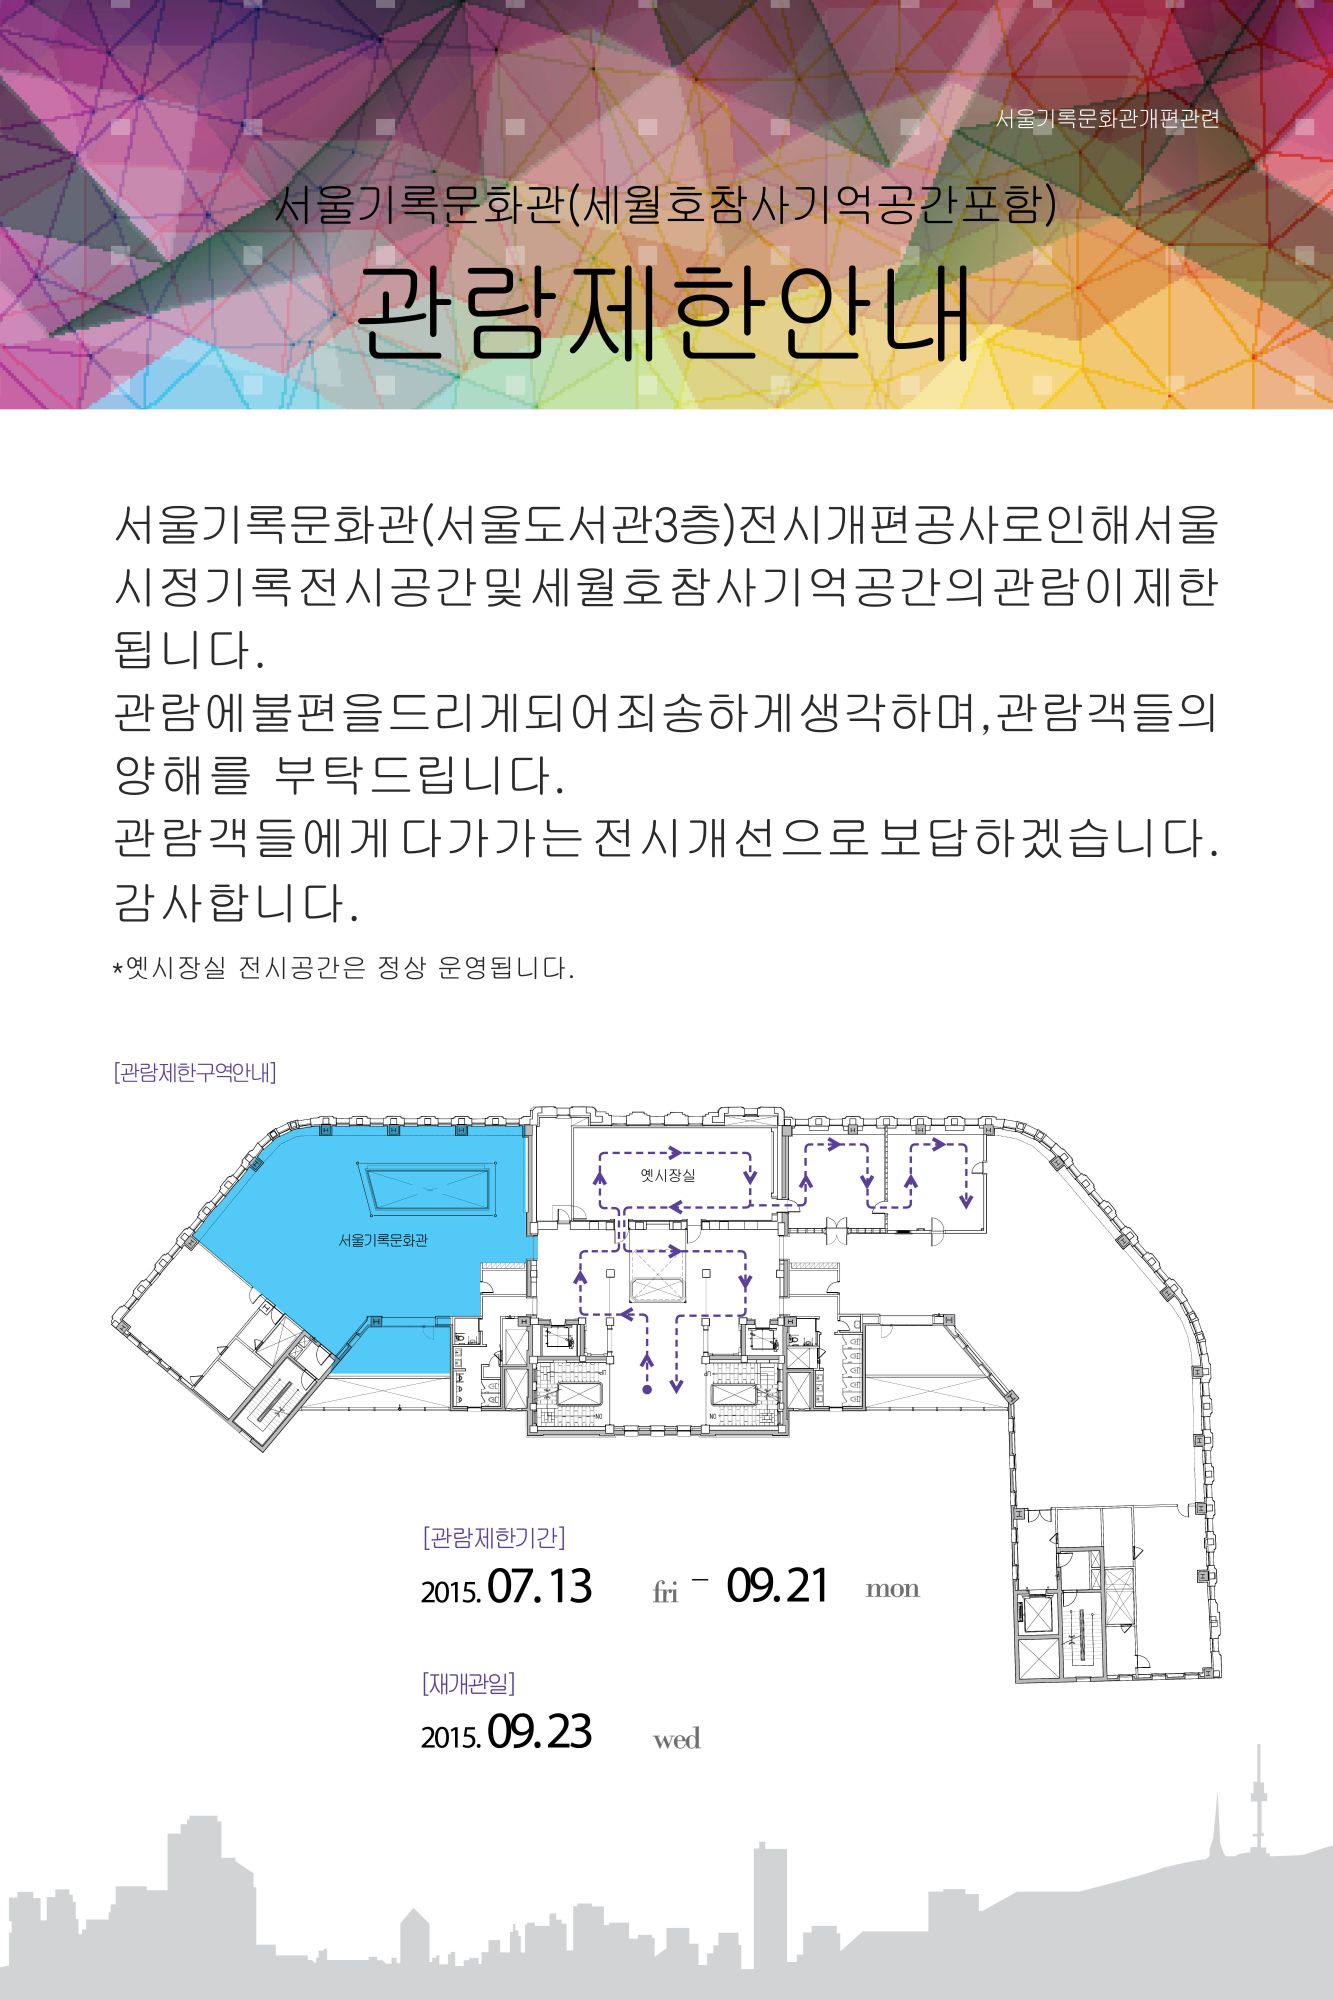 [공지] 서울기록문화관(서울도서관 3층) 공사 안내 포스터